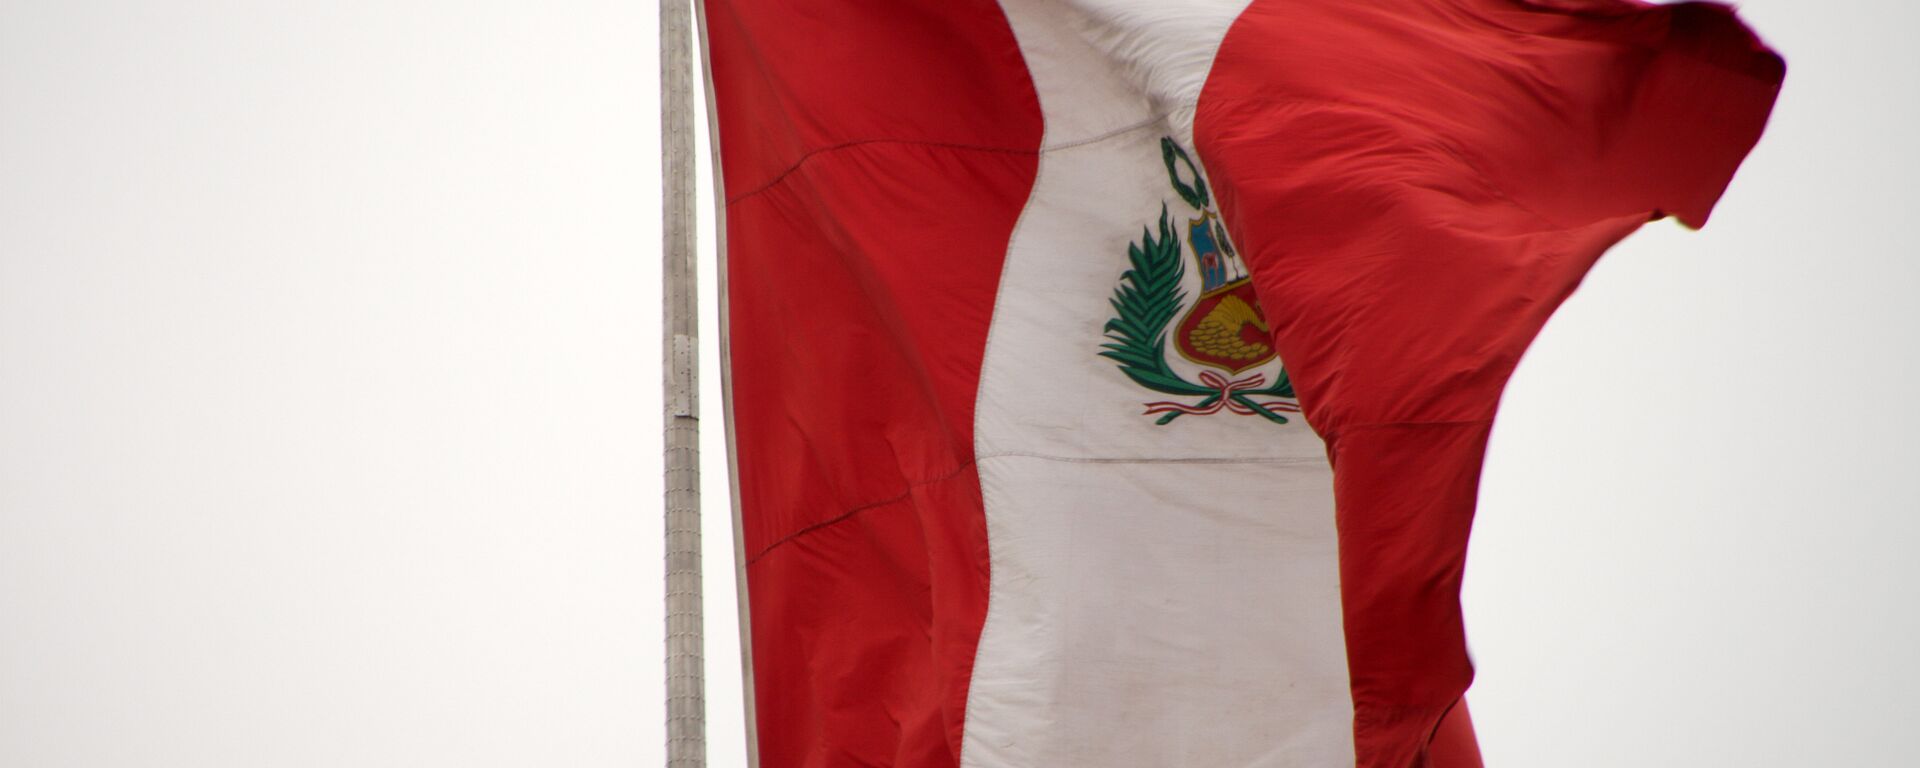 La bandera de Perú - Sputnik Mundo, 1920, 22.02.2021